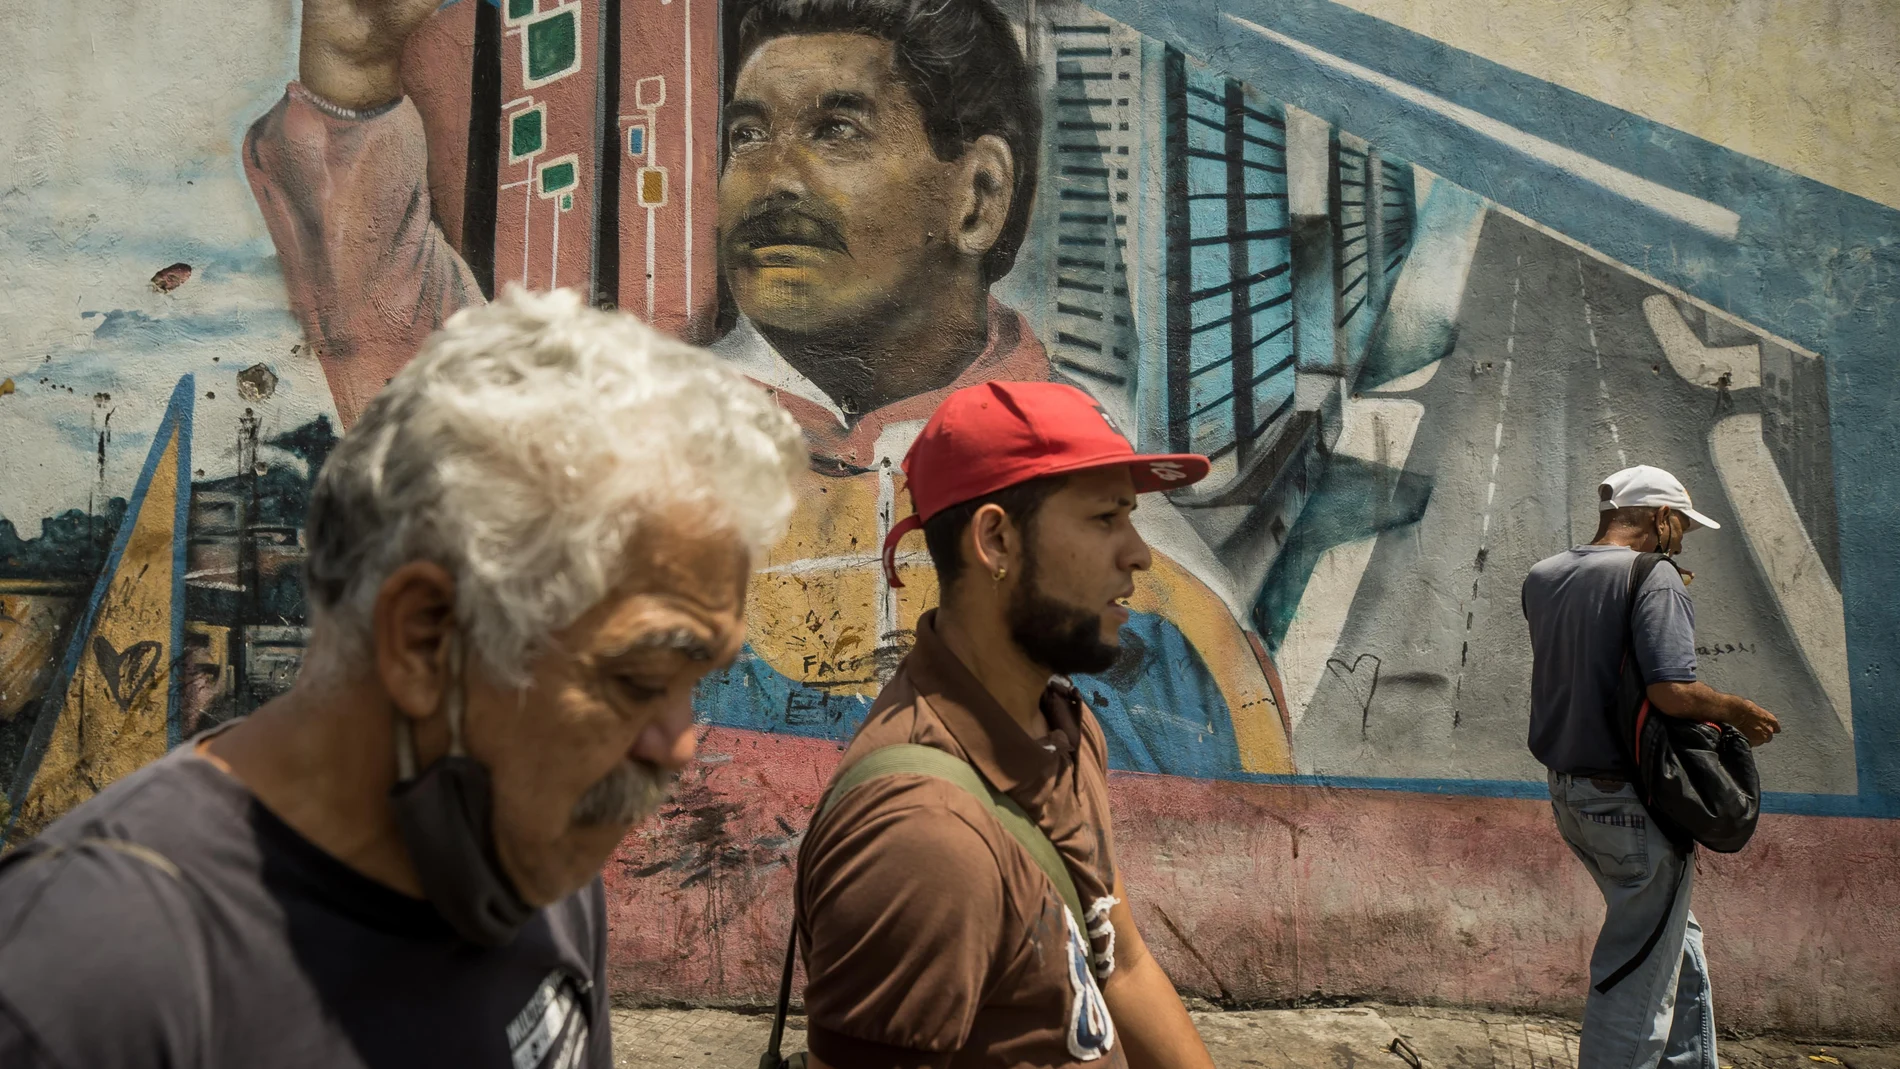 AME565. CARACAS (VENEZUELA), 08/03/2023.- Varias personas caminan frente a un graffiti con la imagen del presidente de Venezuela, Nicolás Maduro, el 3 de marzo de 2023, en Caracas (Venezuela). El 8 de marzo de 2013 Nicolás Maduro juró asumir la Presidencia de Venezuela con "mano dura", una promesa que hoy, cuando cumple diez años en el cargo, sigue viva y se ha cumplido a rajatabla, especialmente cuando la crispación política y los múltiples enemigos de la revolución bolivariana amenazaron su continuidad en el poder. EFE/ Miguel Gutierrez